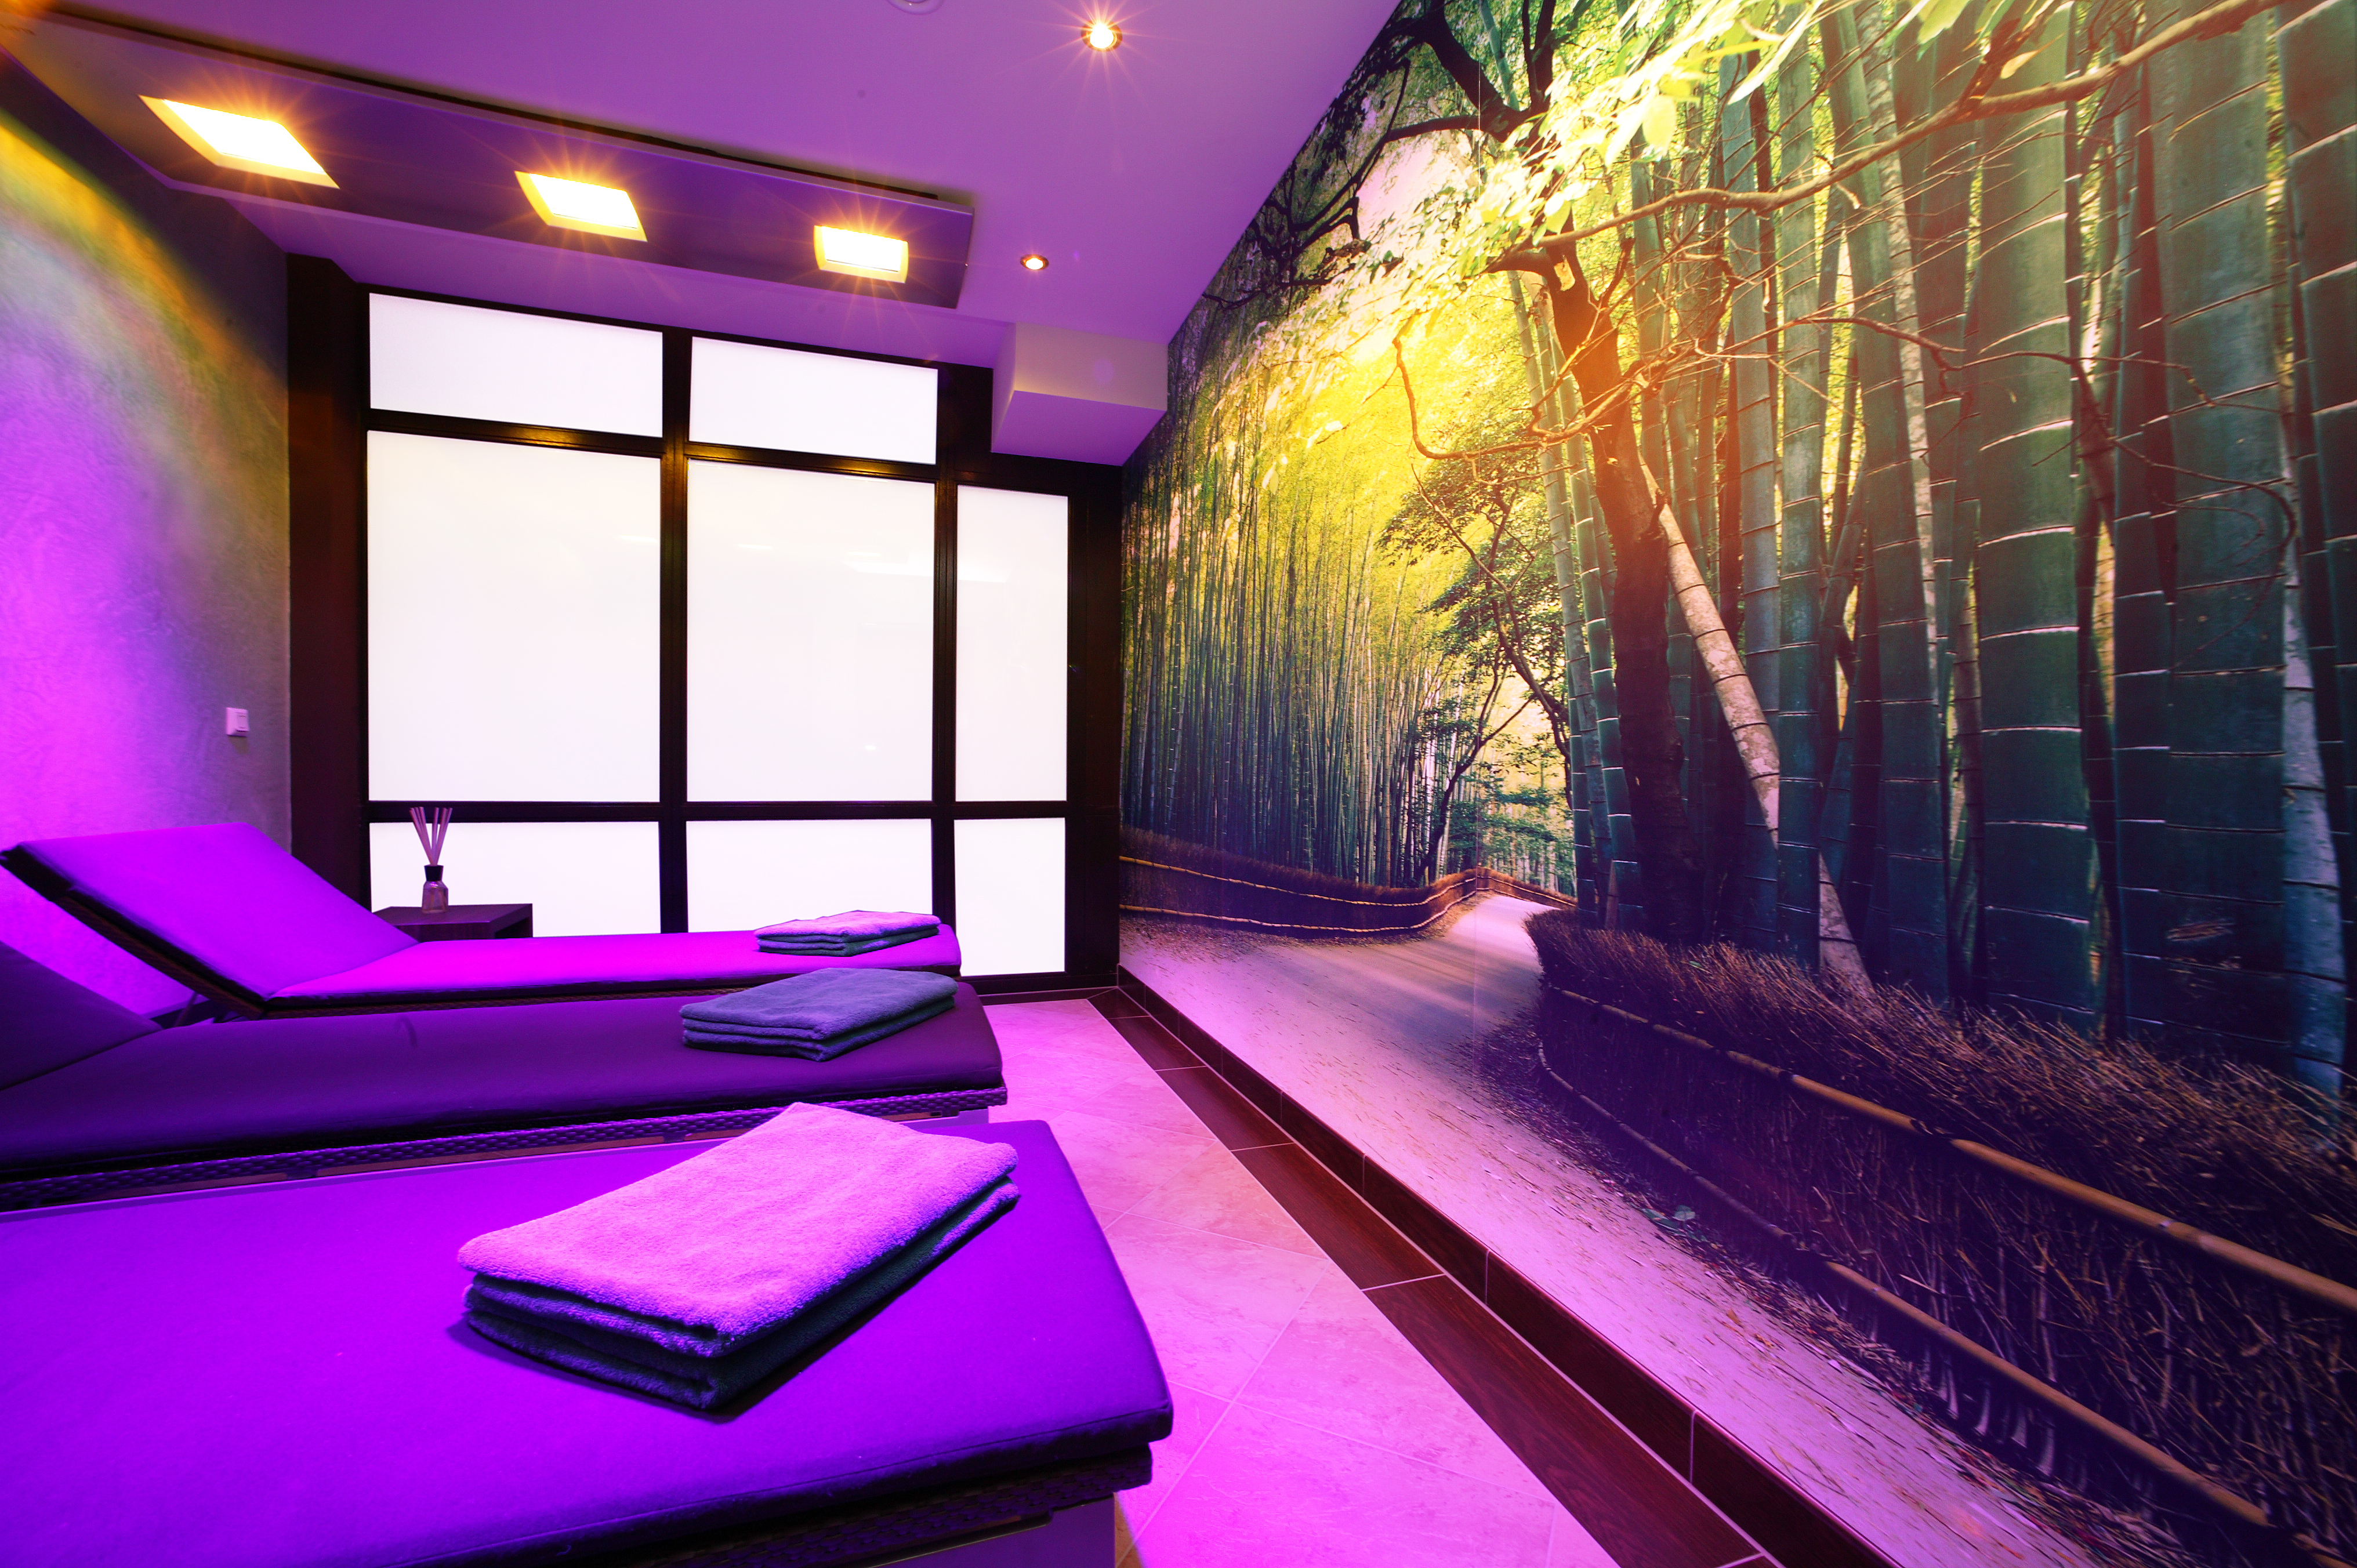 Klafs Sonnenraum im Wellnessbereich mit gemütlichen Liegen und Blick auf ein Wandbild mit Bambuswald